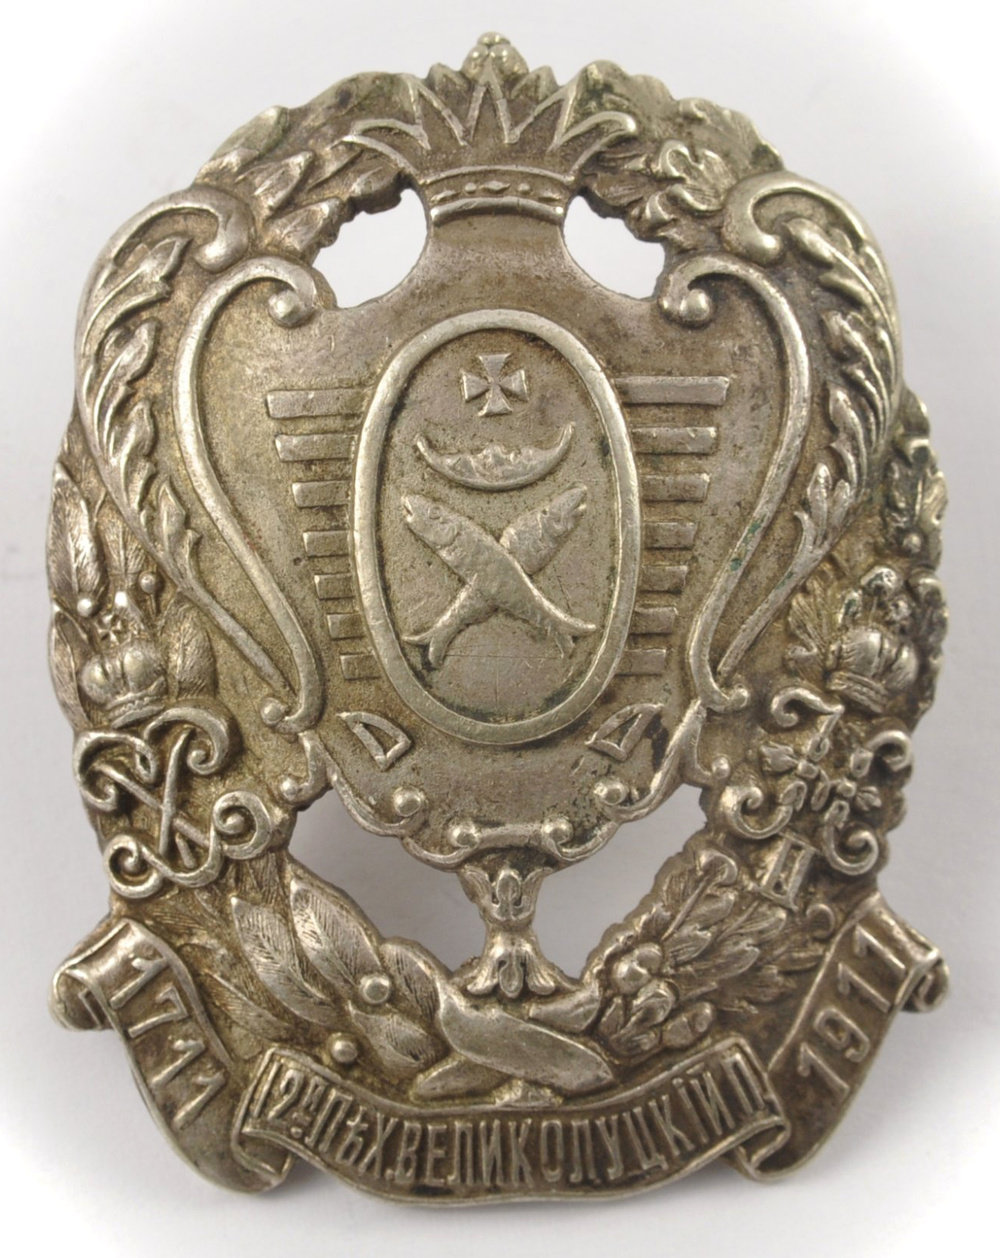 Боевой знак 12-го Великолуцкого полка.